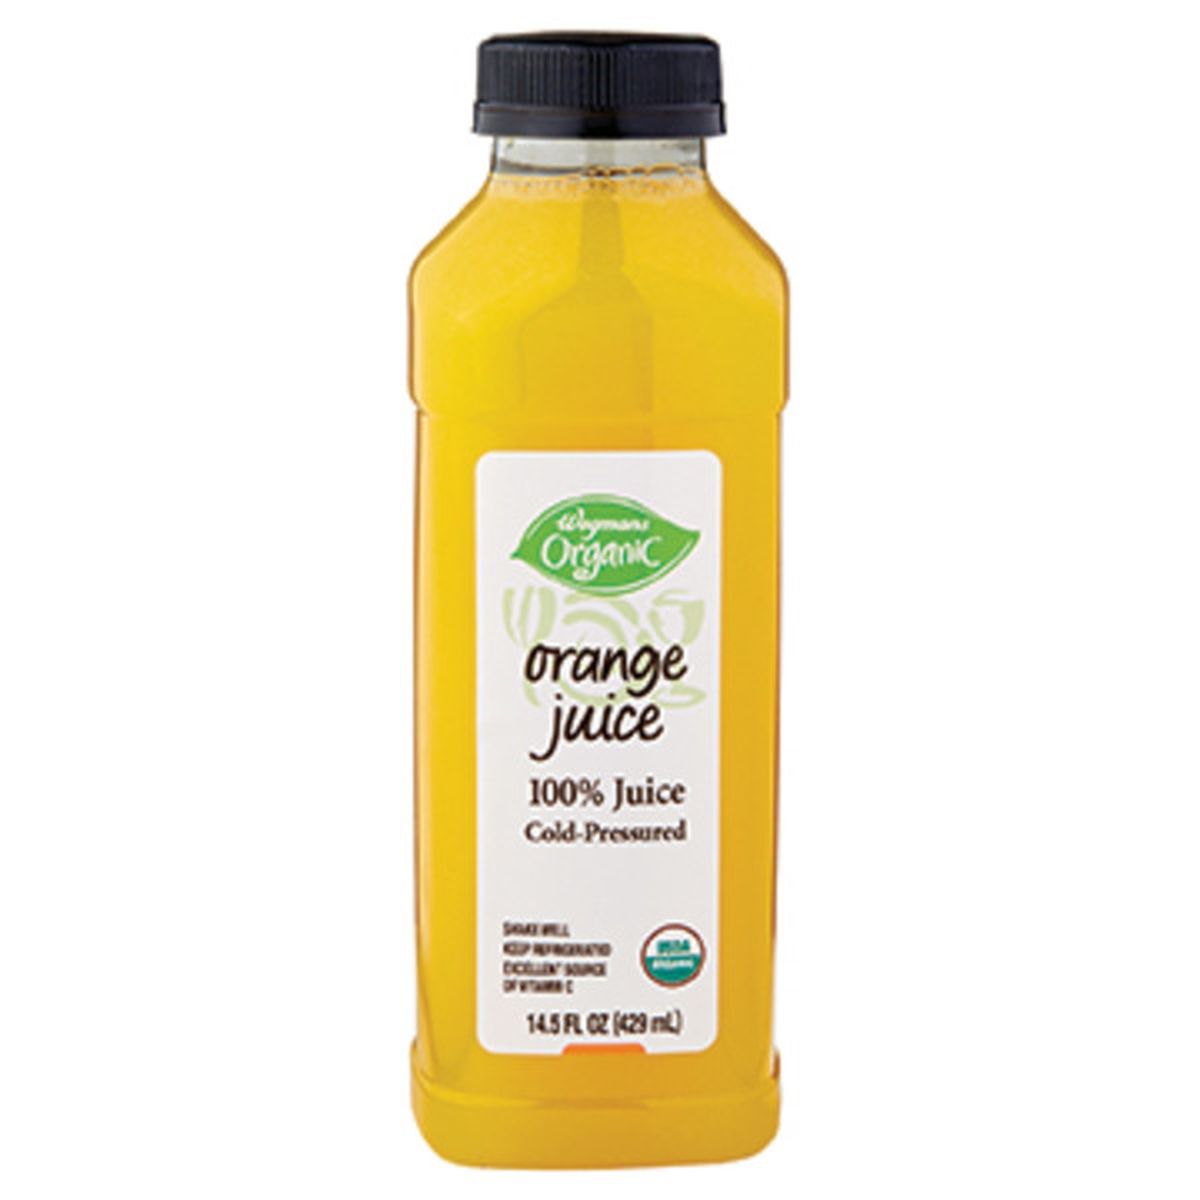 Calories in Wegmans Organic Cold-Pressured Orange Juice